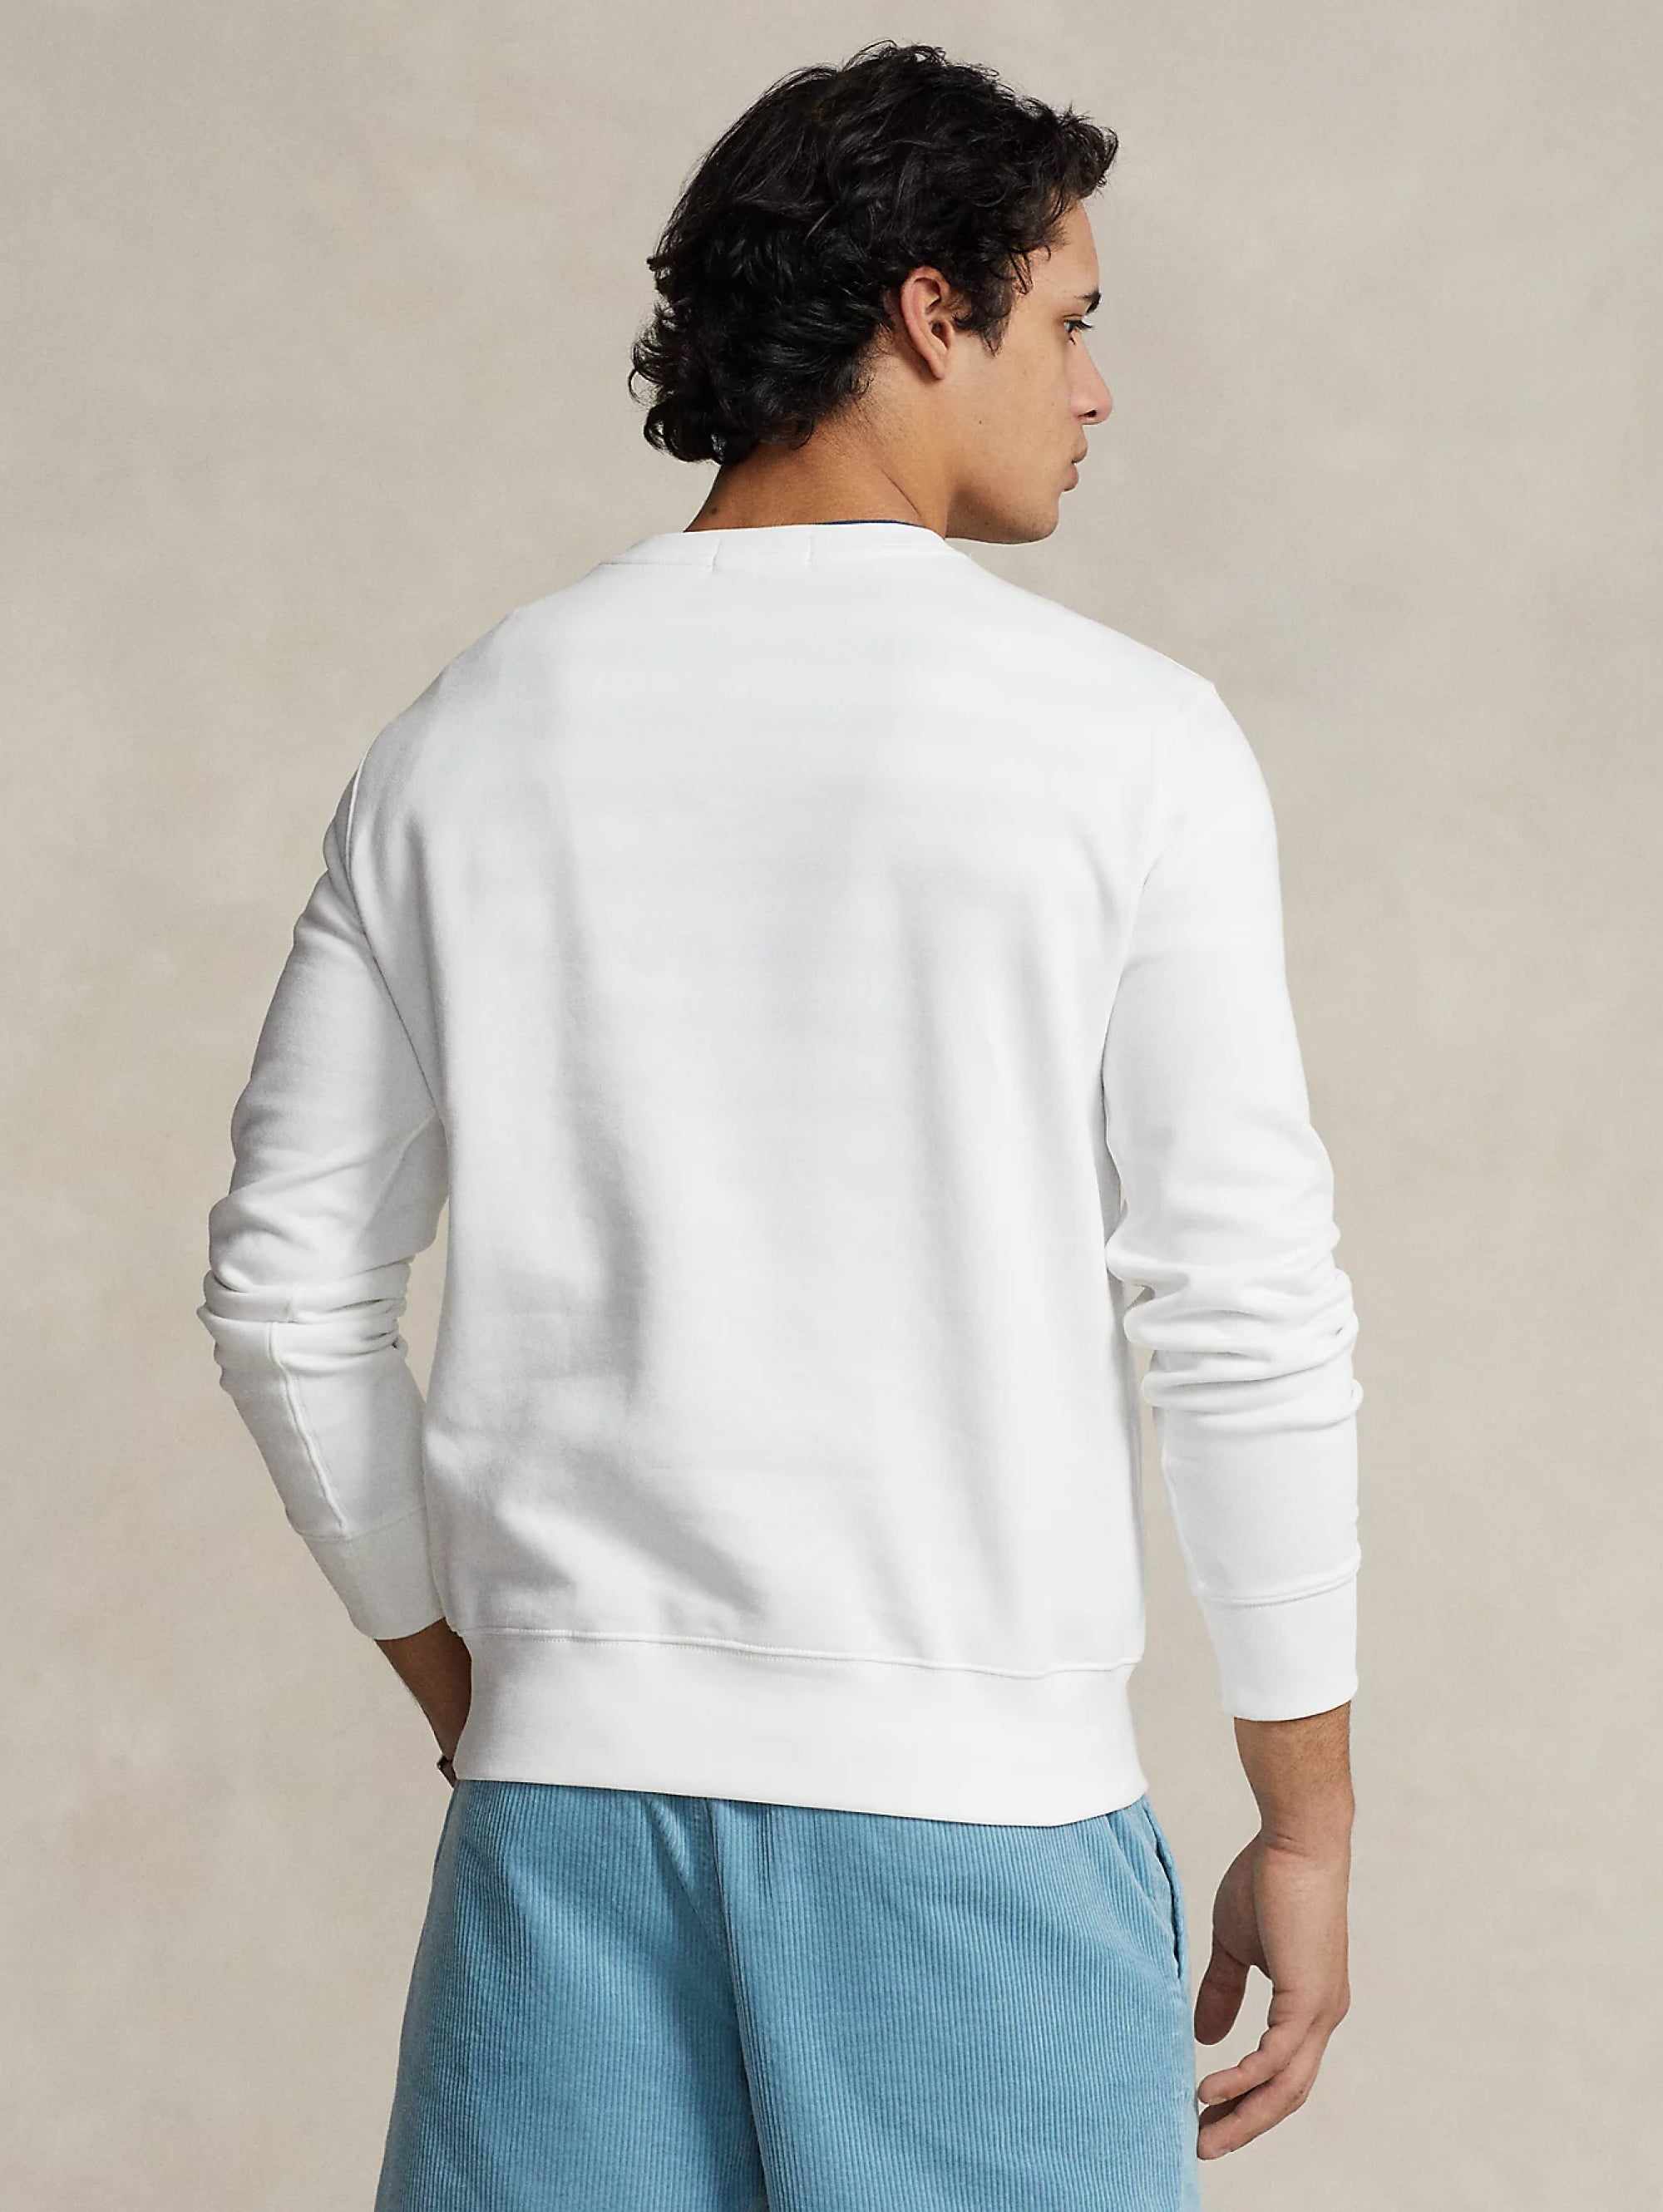 Sweatshirt mit Rundhalsausschnitt und weißem Polobär